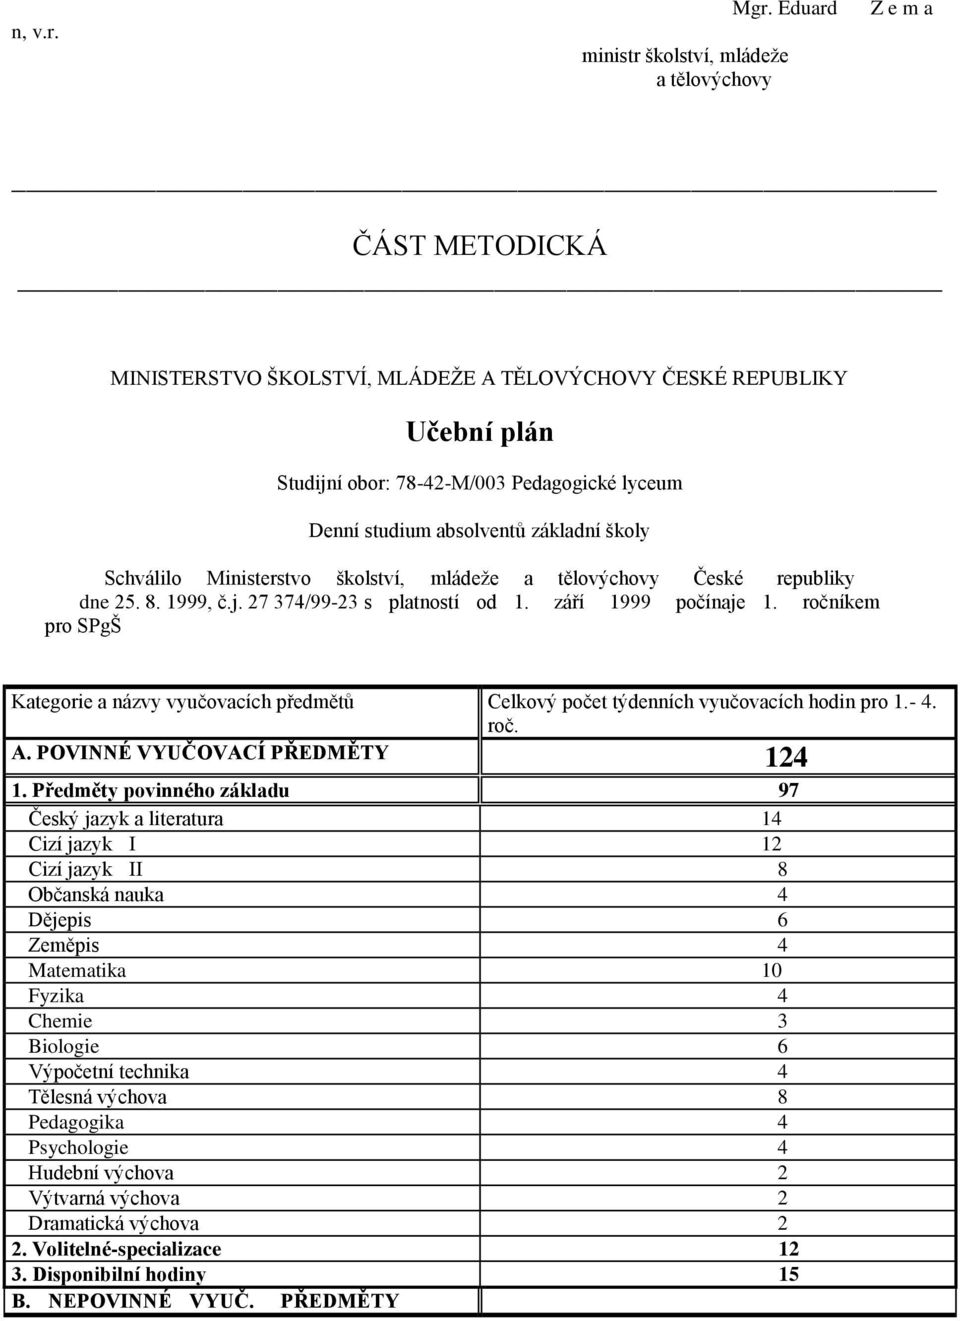 Ministerstvo školství, mládeže a tělovýchovy České republiky dne 25. 8. 1999, č.j. 27 374/99-23 s platností od 1. září 1999 počínaje 1.